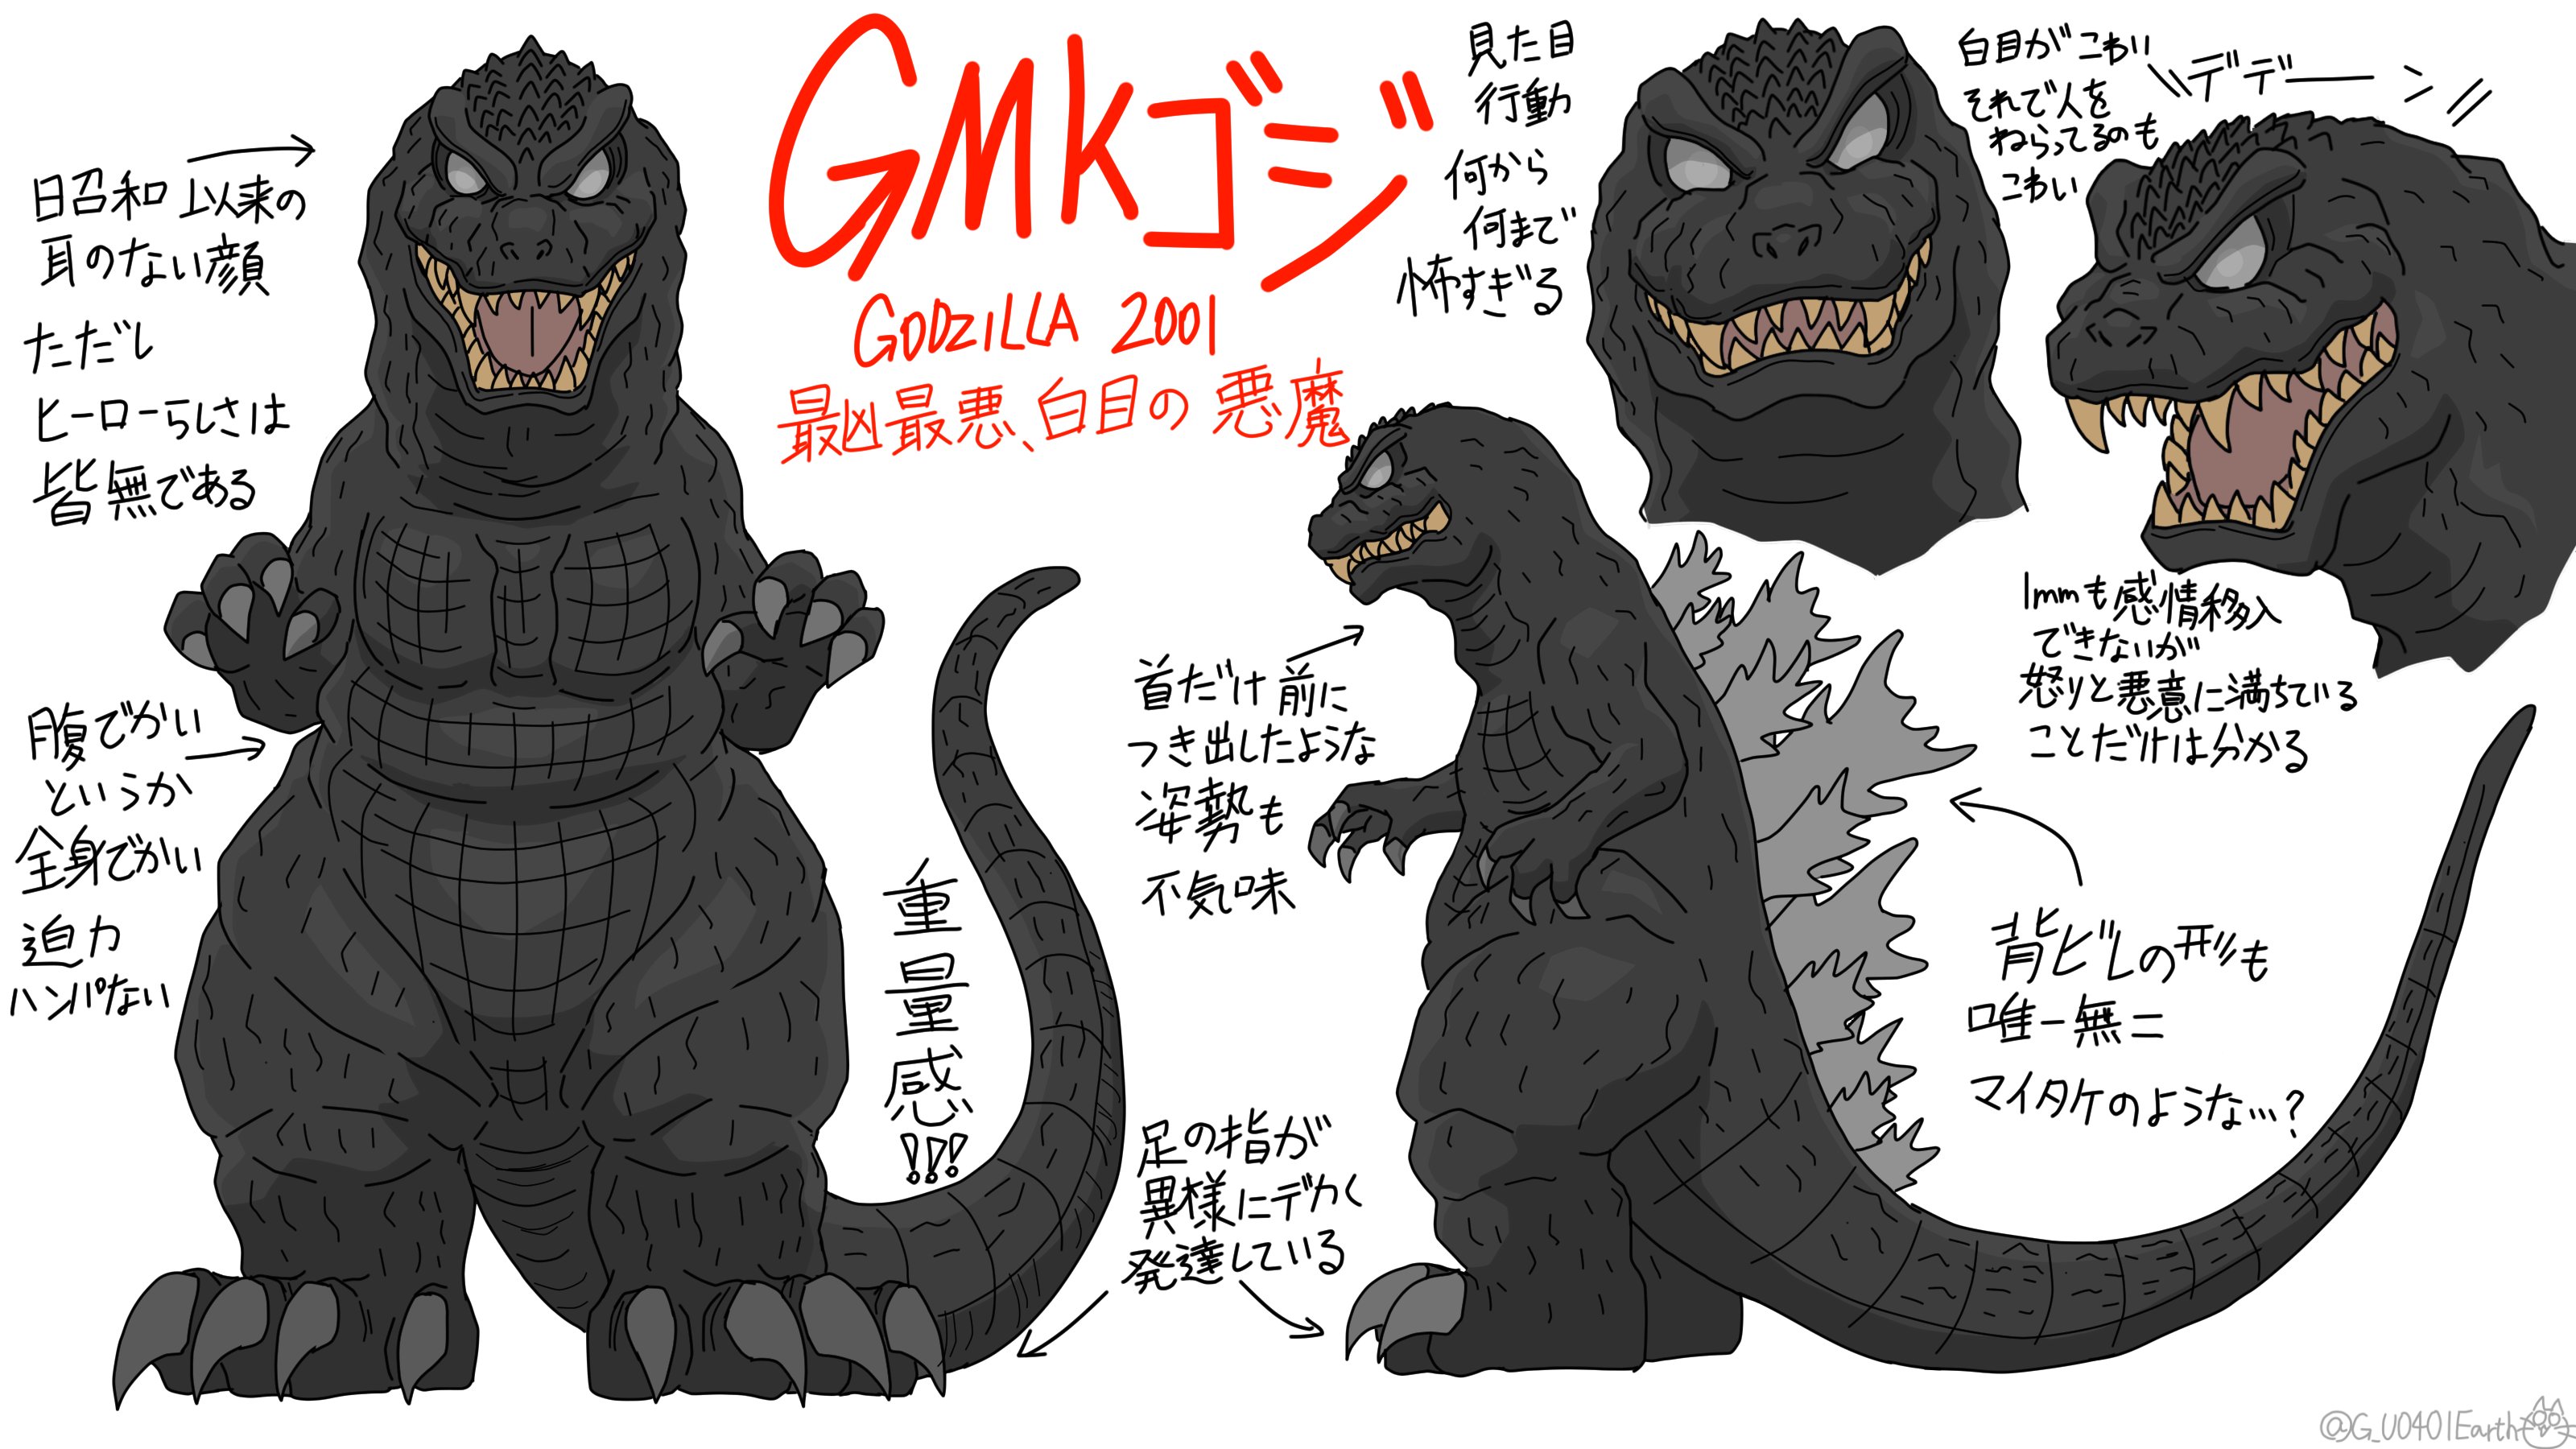 猫怪獣ノラ Gmkゴジの デフォルメイラスト練習 ゴジラ Godzilla T Co 4c0bmjfpgl Twitter